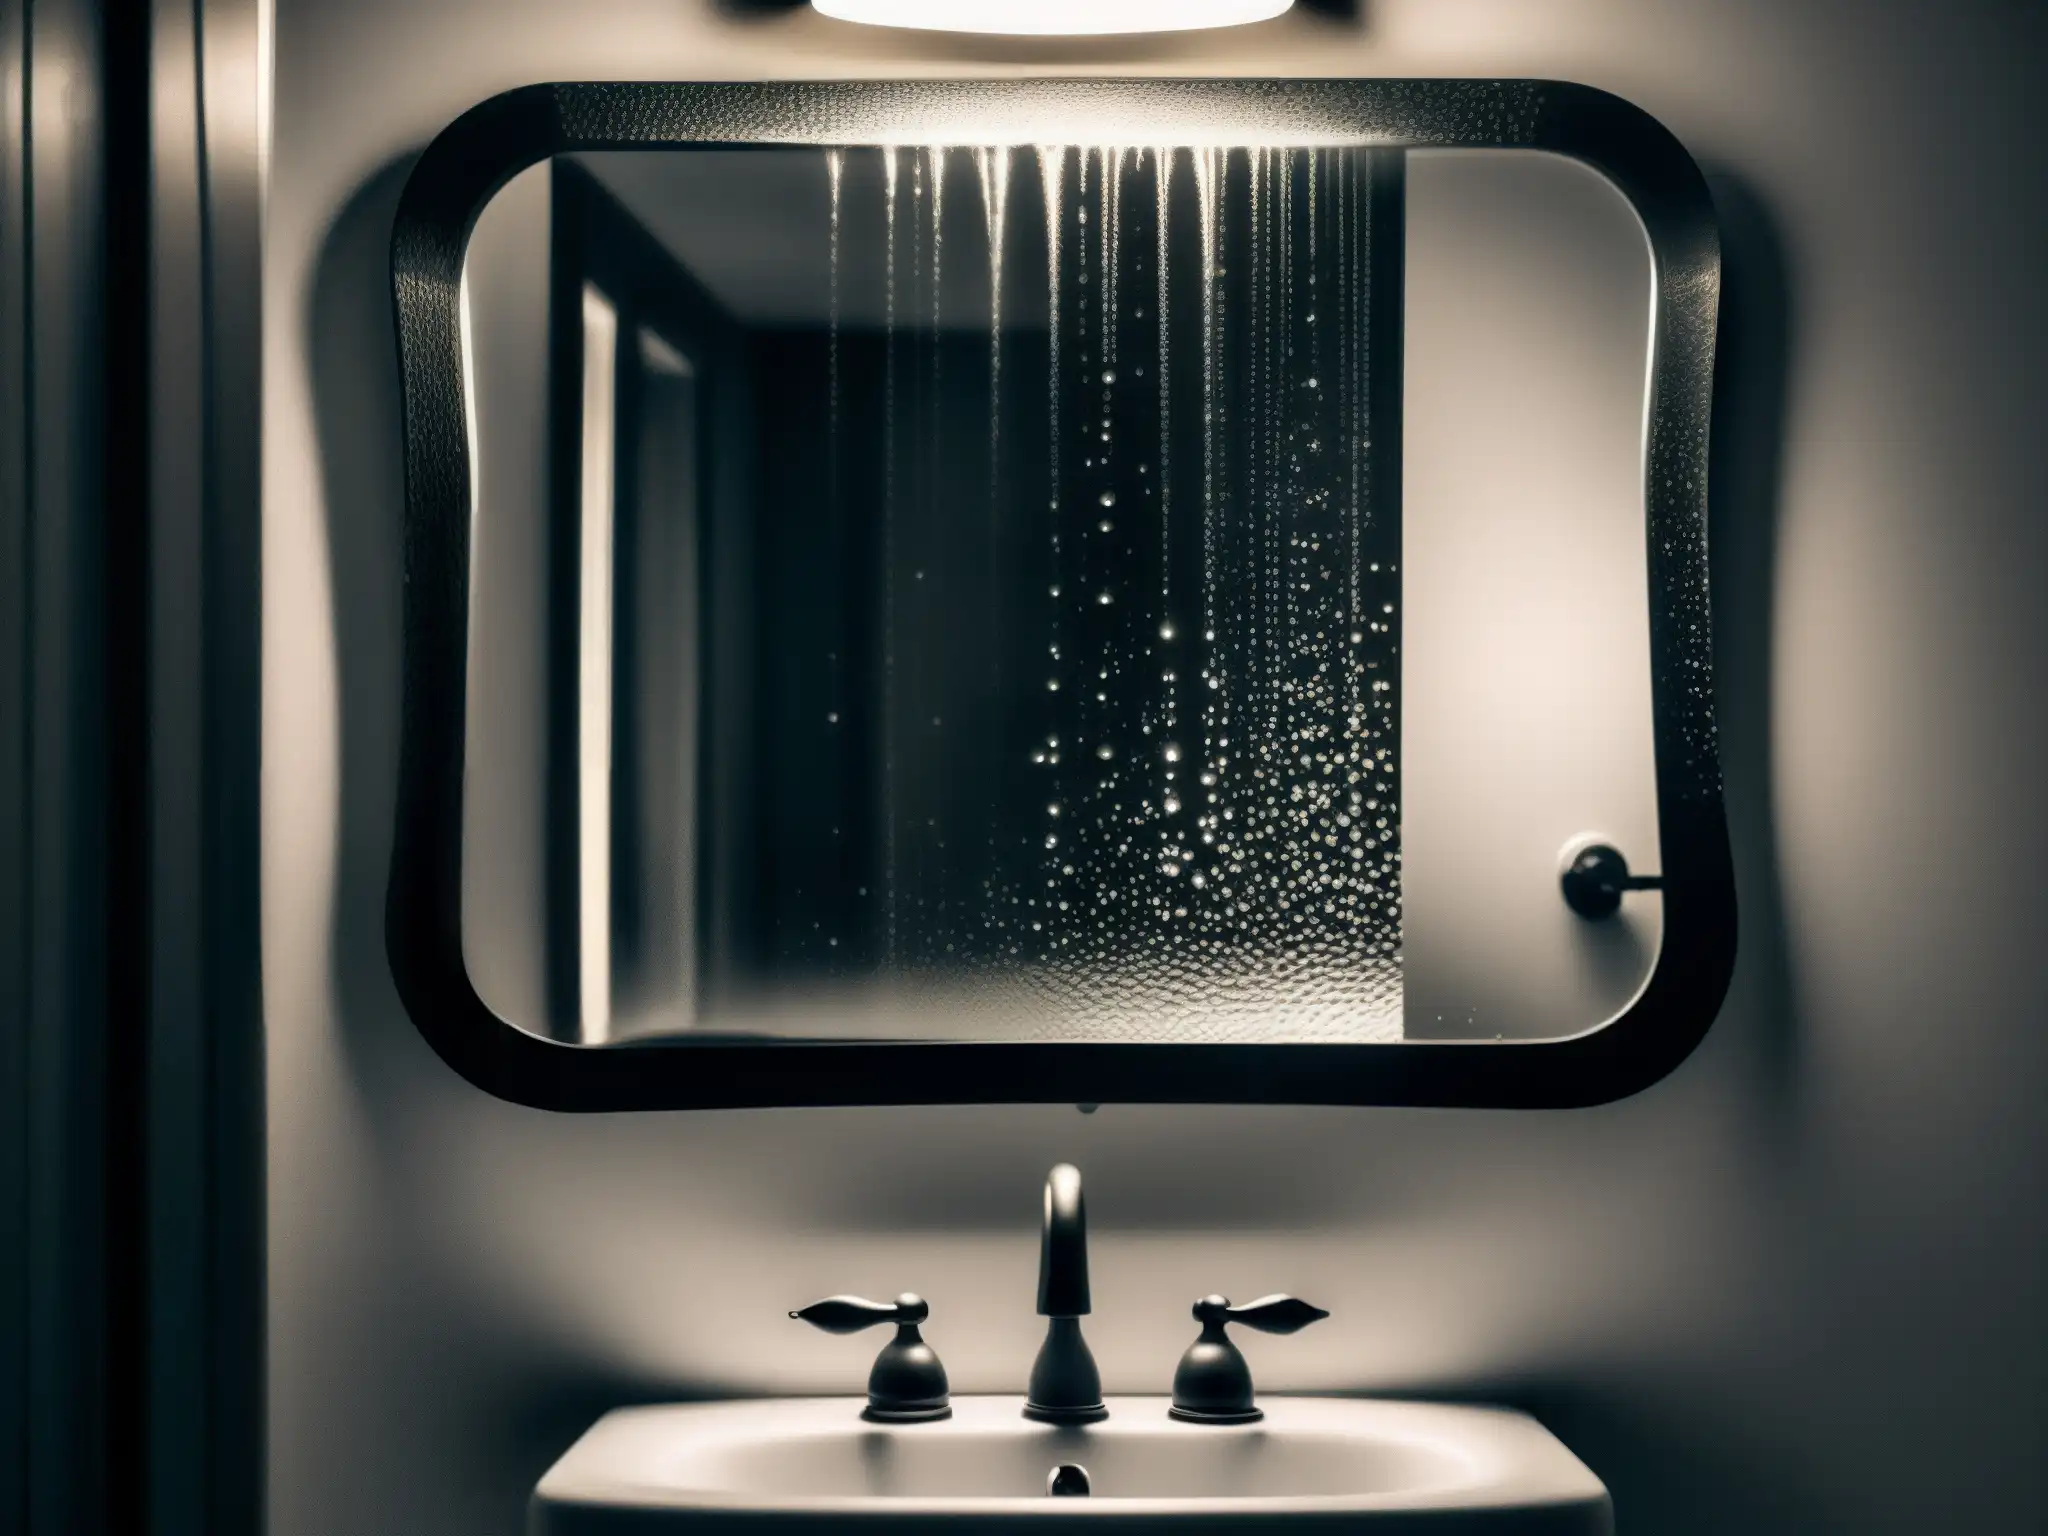 Un inquietante baño en blanco y negro con gotas de agua en el espejo, creando reflejos distorsionados